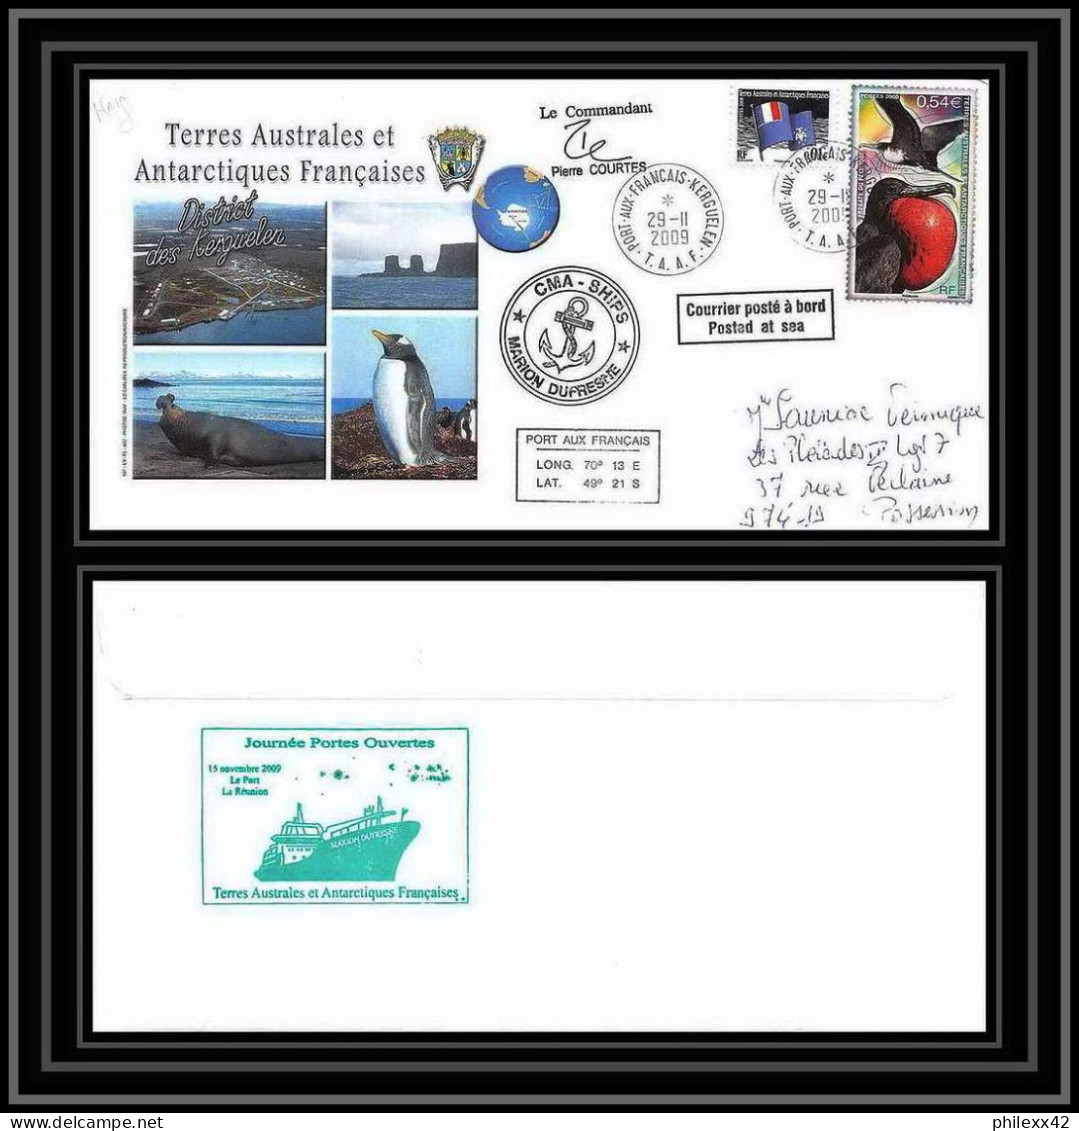 2959 Terres Australes TAAF Lettre Dufresne Signé Signed Kerguelen Portes Ouvertes 29/11/2009 N°517 Fregate Bird - Briefe U. Dokumente